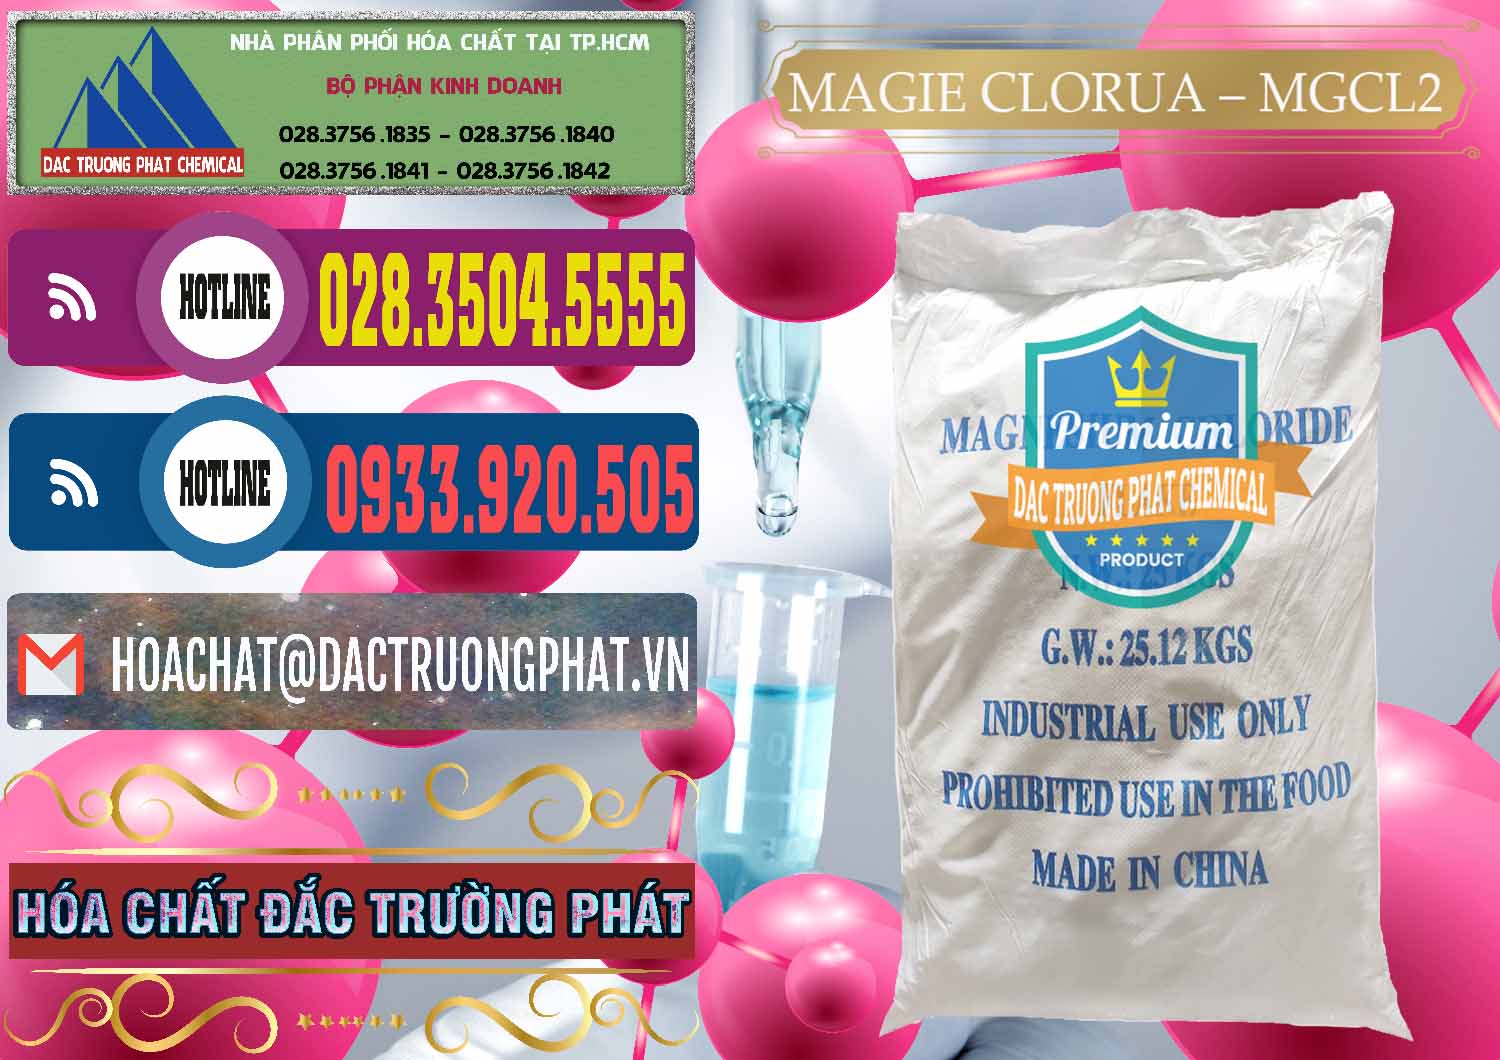 Nơi phân phối & bán Magie Clorua – MGCL2 96% Dạng Vảy Trung Quốc China - 0091 - Cty chuyên cung cấp _ bán hóa chất tại TP.HCM - muabanhoachat.com.vn